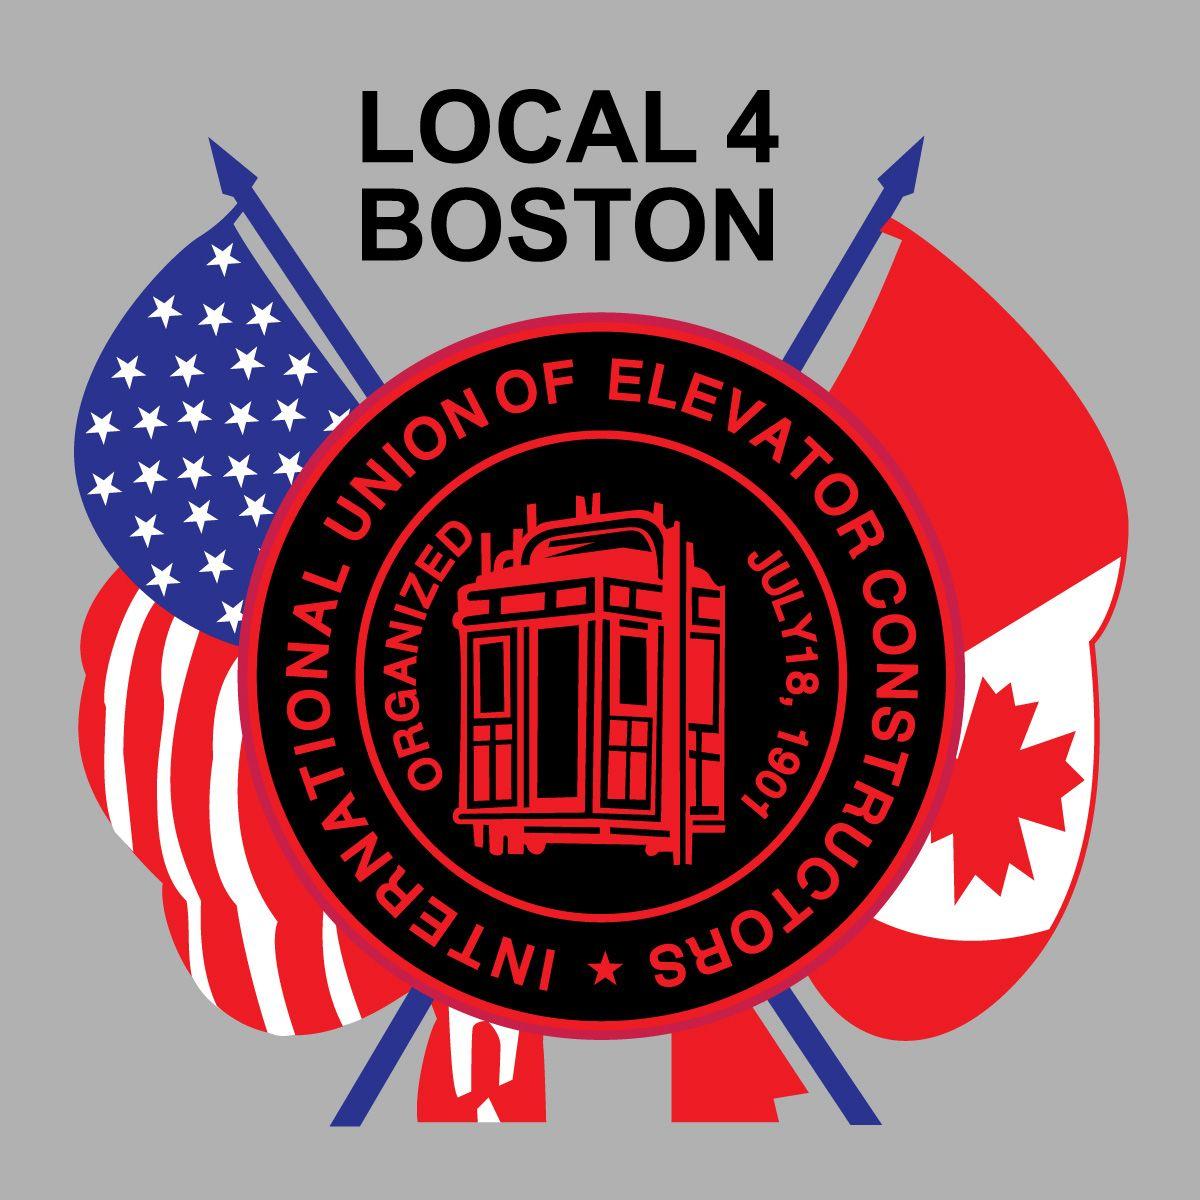 IUEC Logo - 531 IUEC LOGO WITH FLAGS